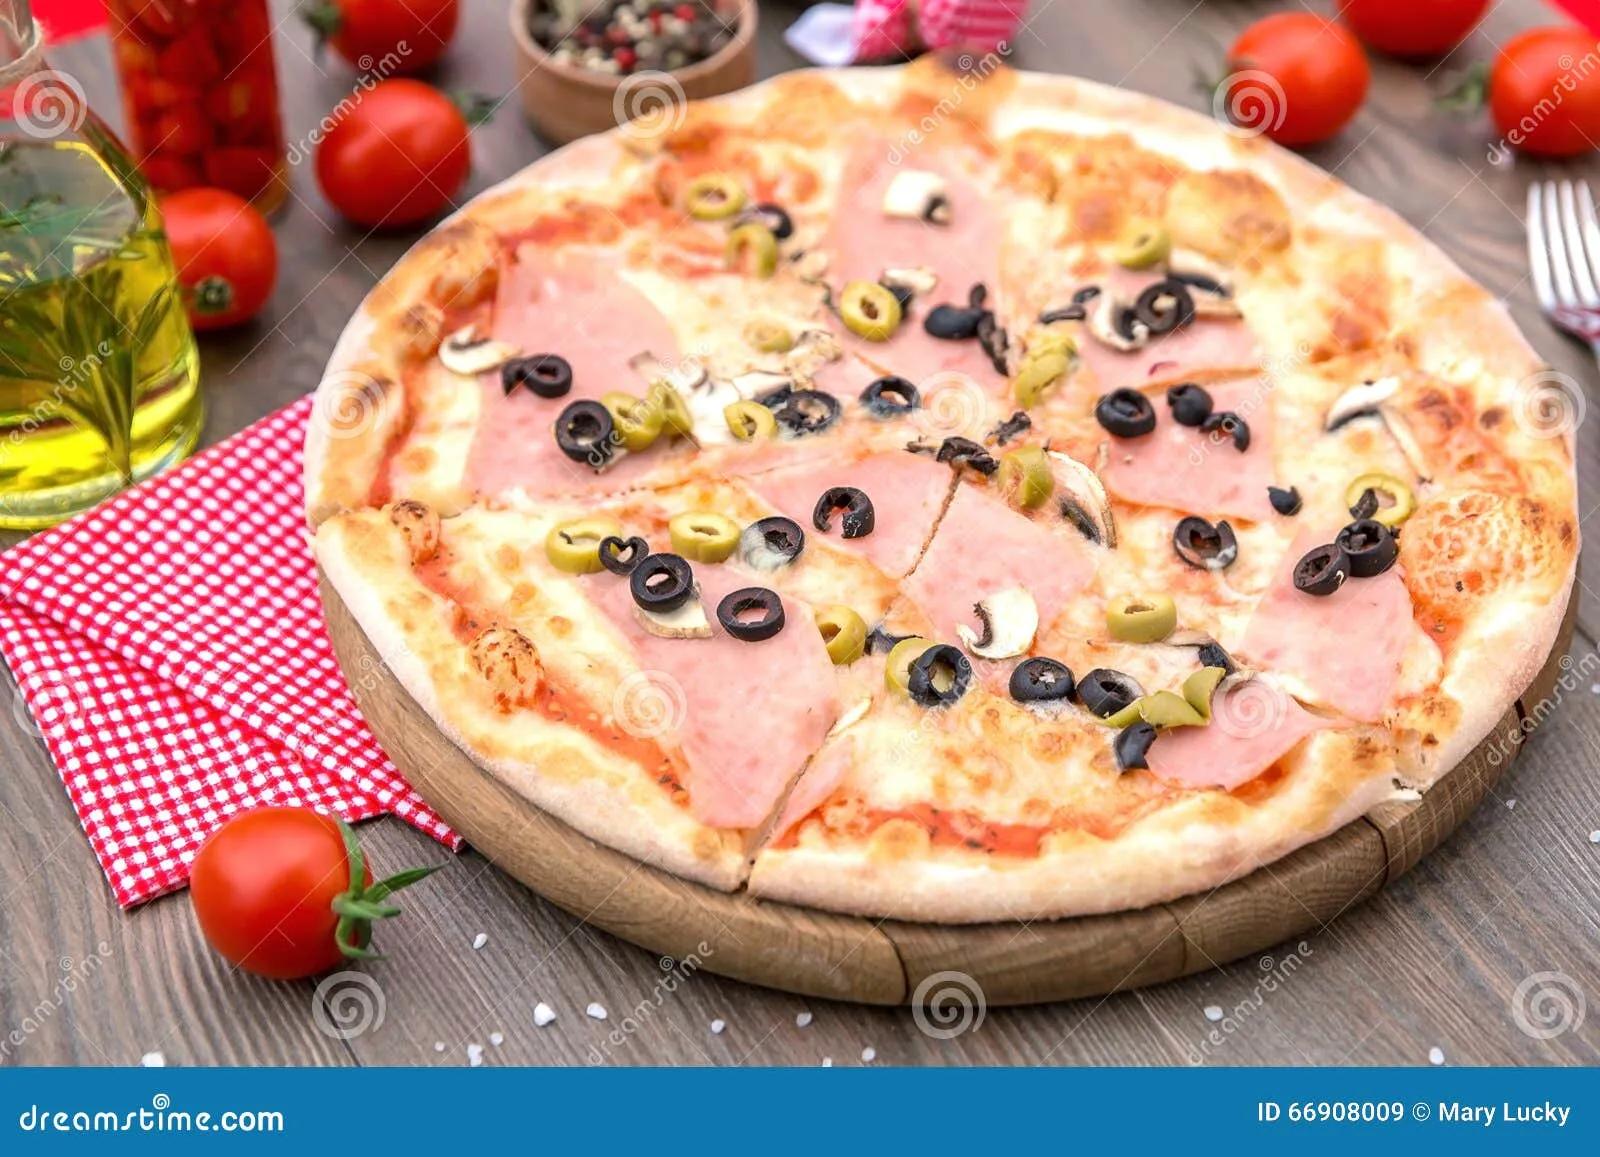 Italienische Pizza Mit Schinken Und Oliven Stockbild - Bild von kirsche ...